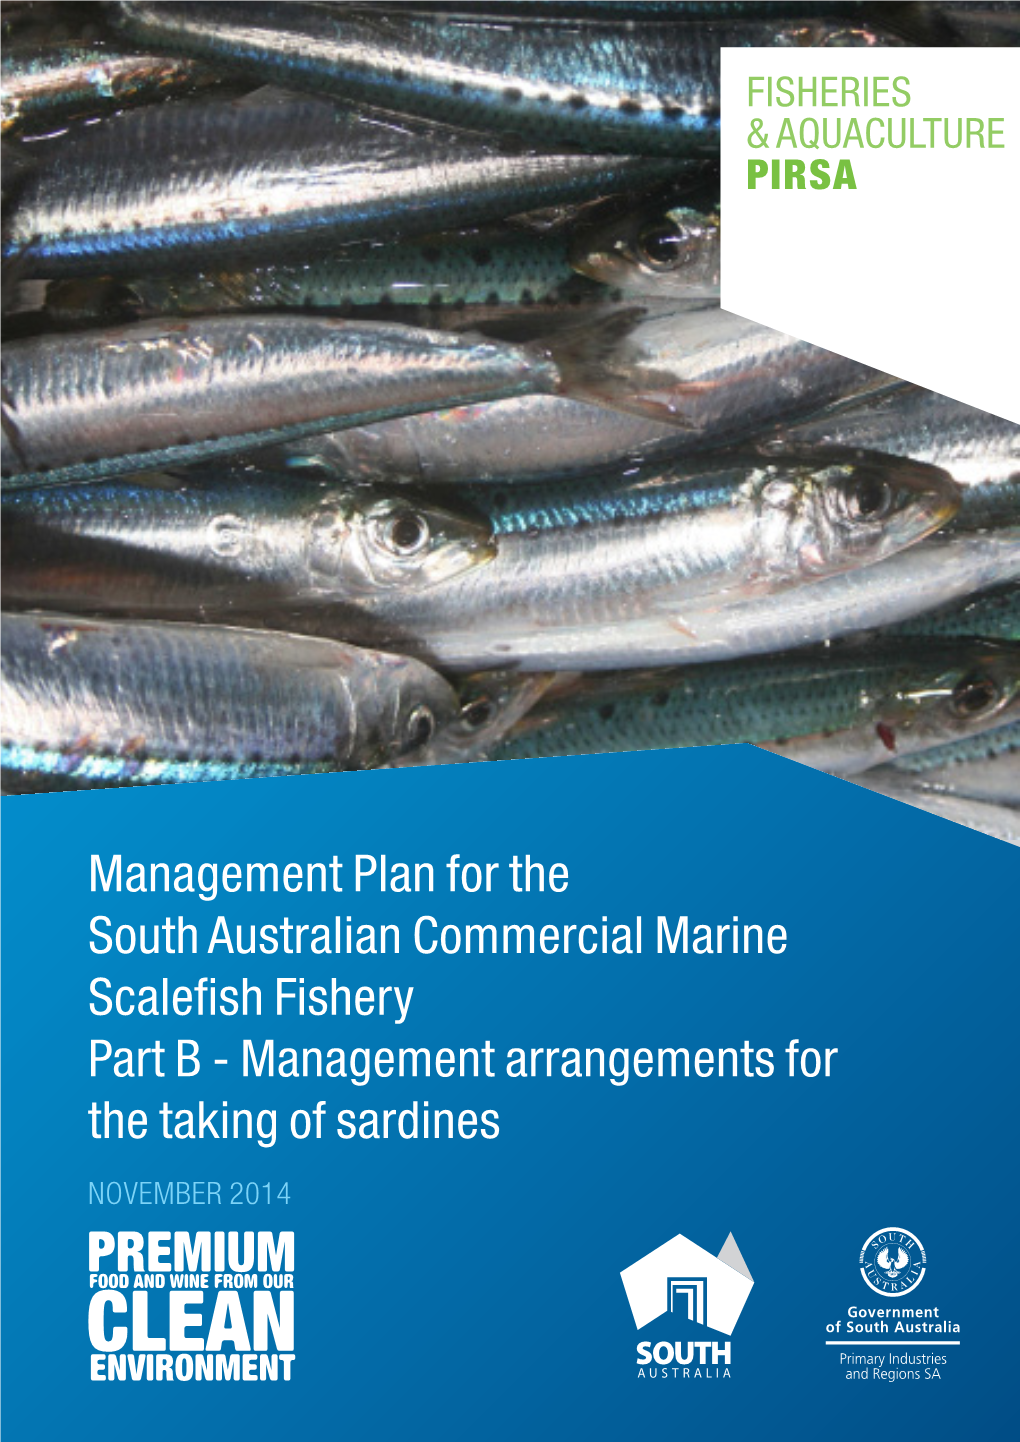 Sardine Management Plan